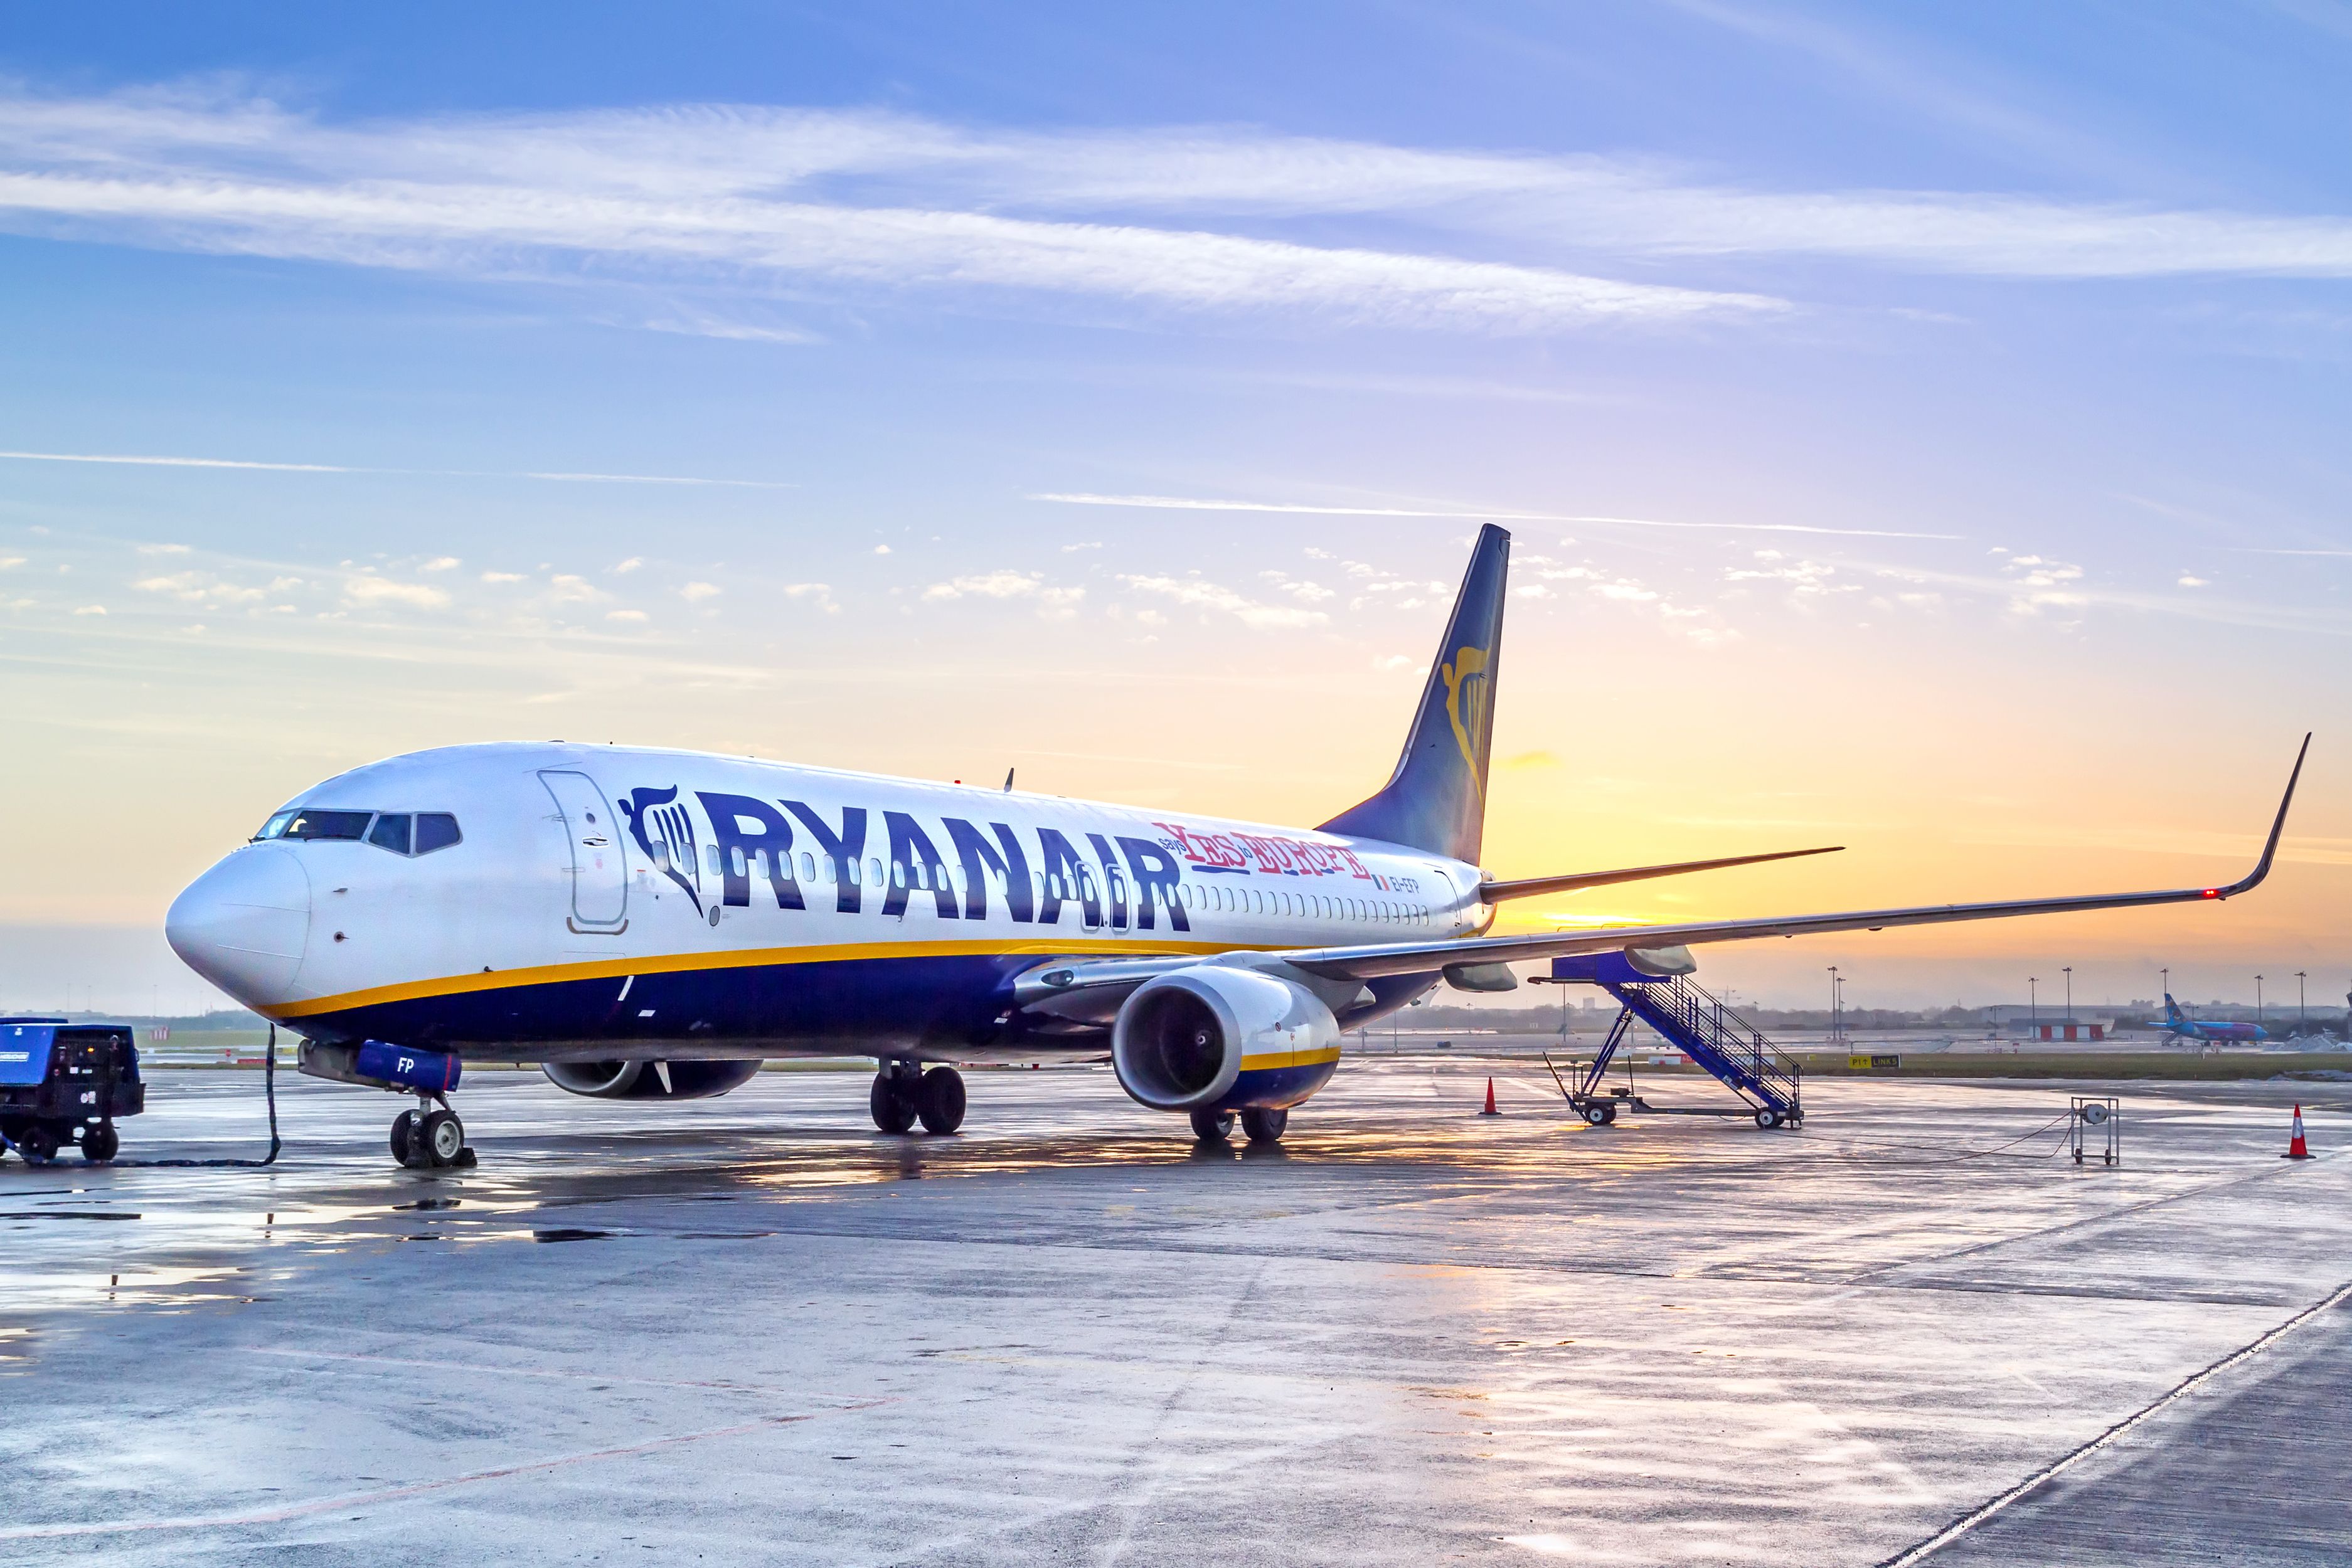 Ryanair sciopero 1 ottobre il calendario con tutti gli scioperi del mese